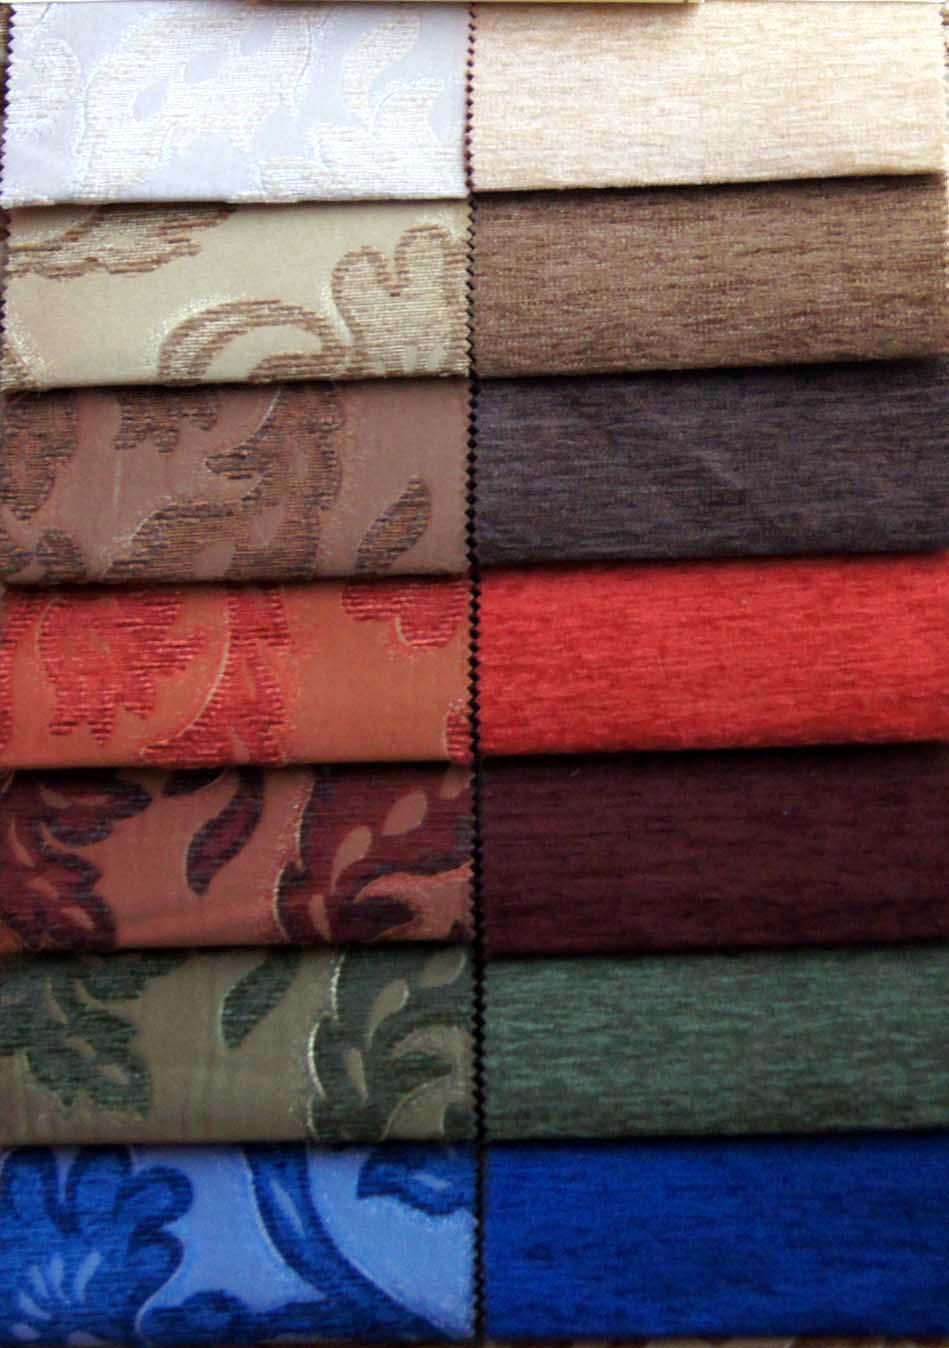 образцы ткани для обивки дивана